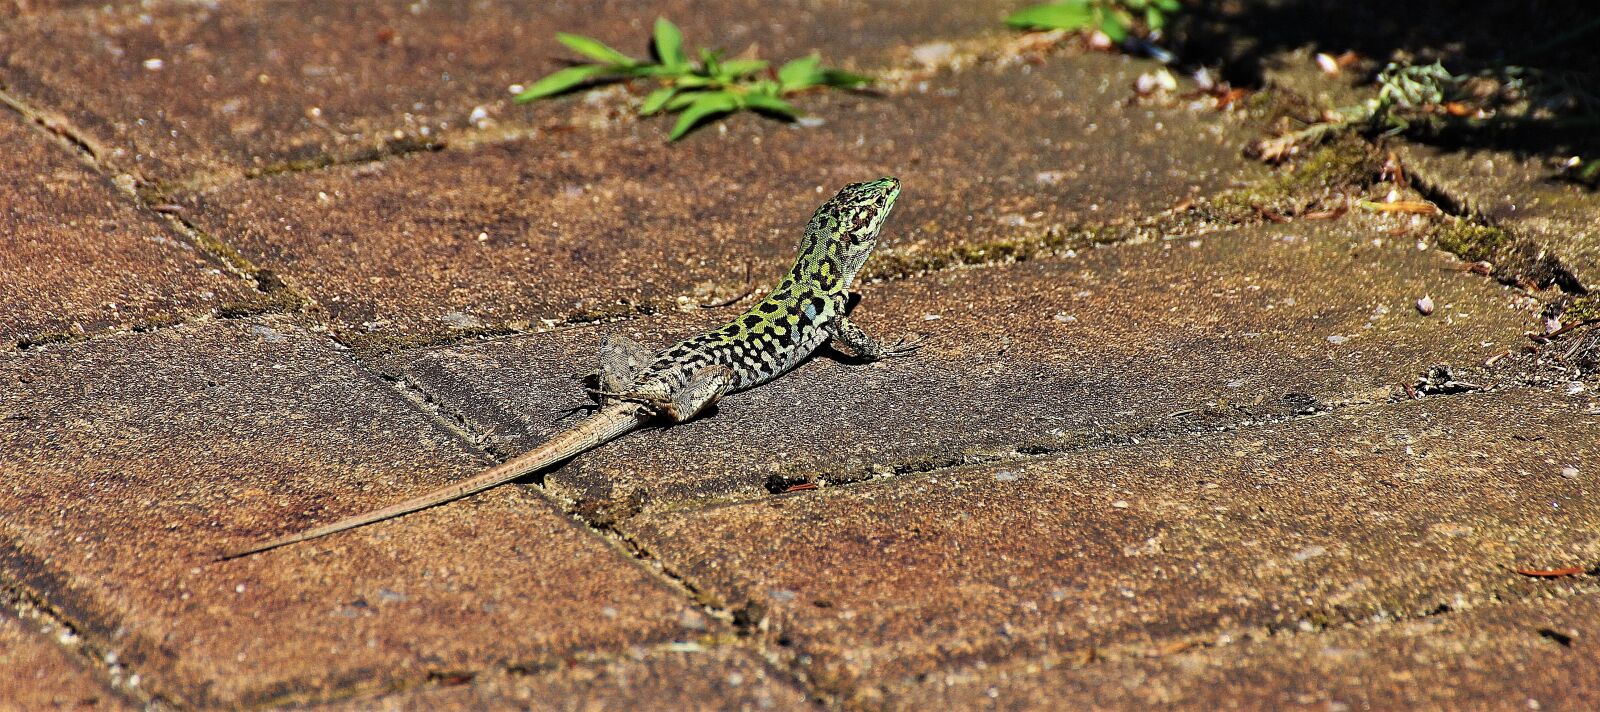 Canon EOS 60D sample photo. Lizard, reptile, animal photography